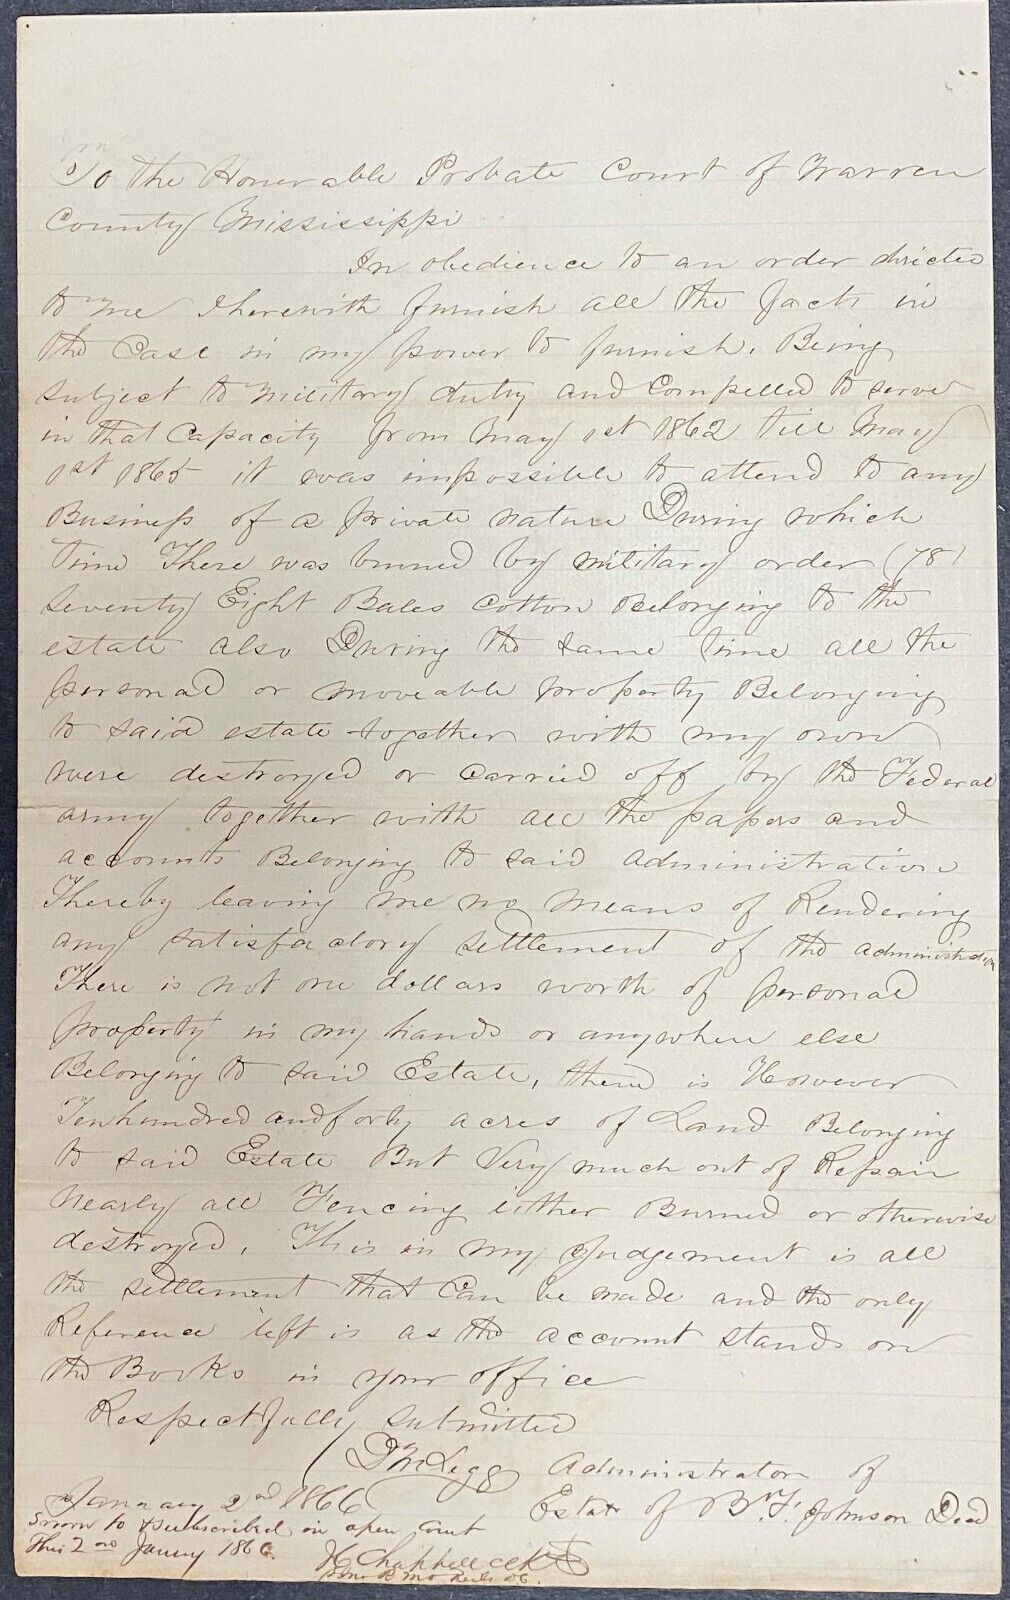 1866 Mississippi Court Document Regarding Destroyed Cotton